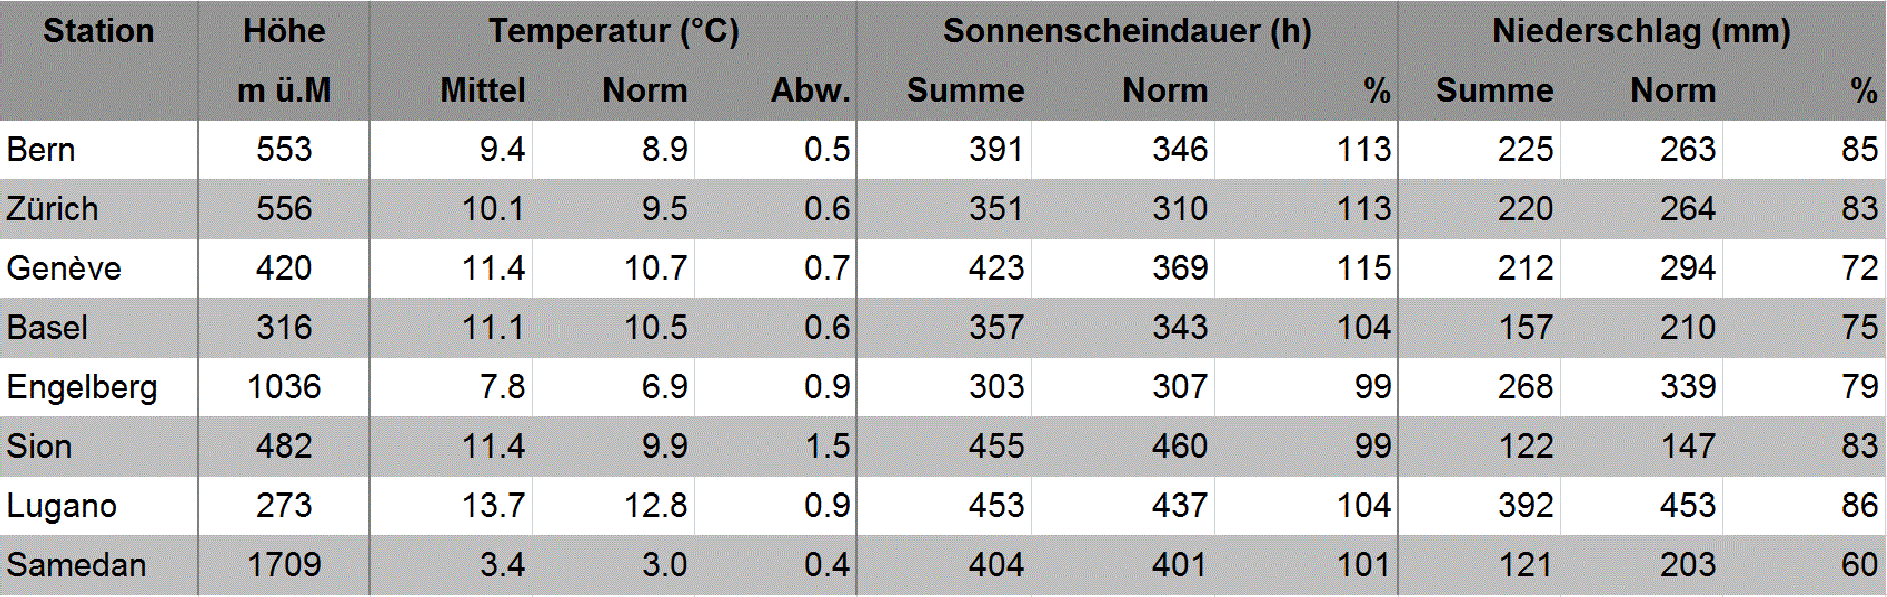 MeteoSchweiz Klimabulletin Herbst 2016 3 Saisonwerte (Herbst 2016) an ausgewählten MeteoSchweiz-Messstationen im Vergleich zur Norm